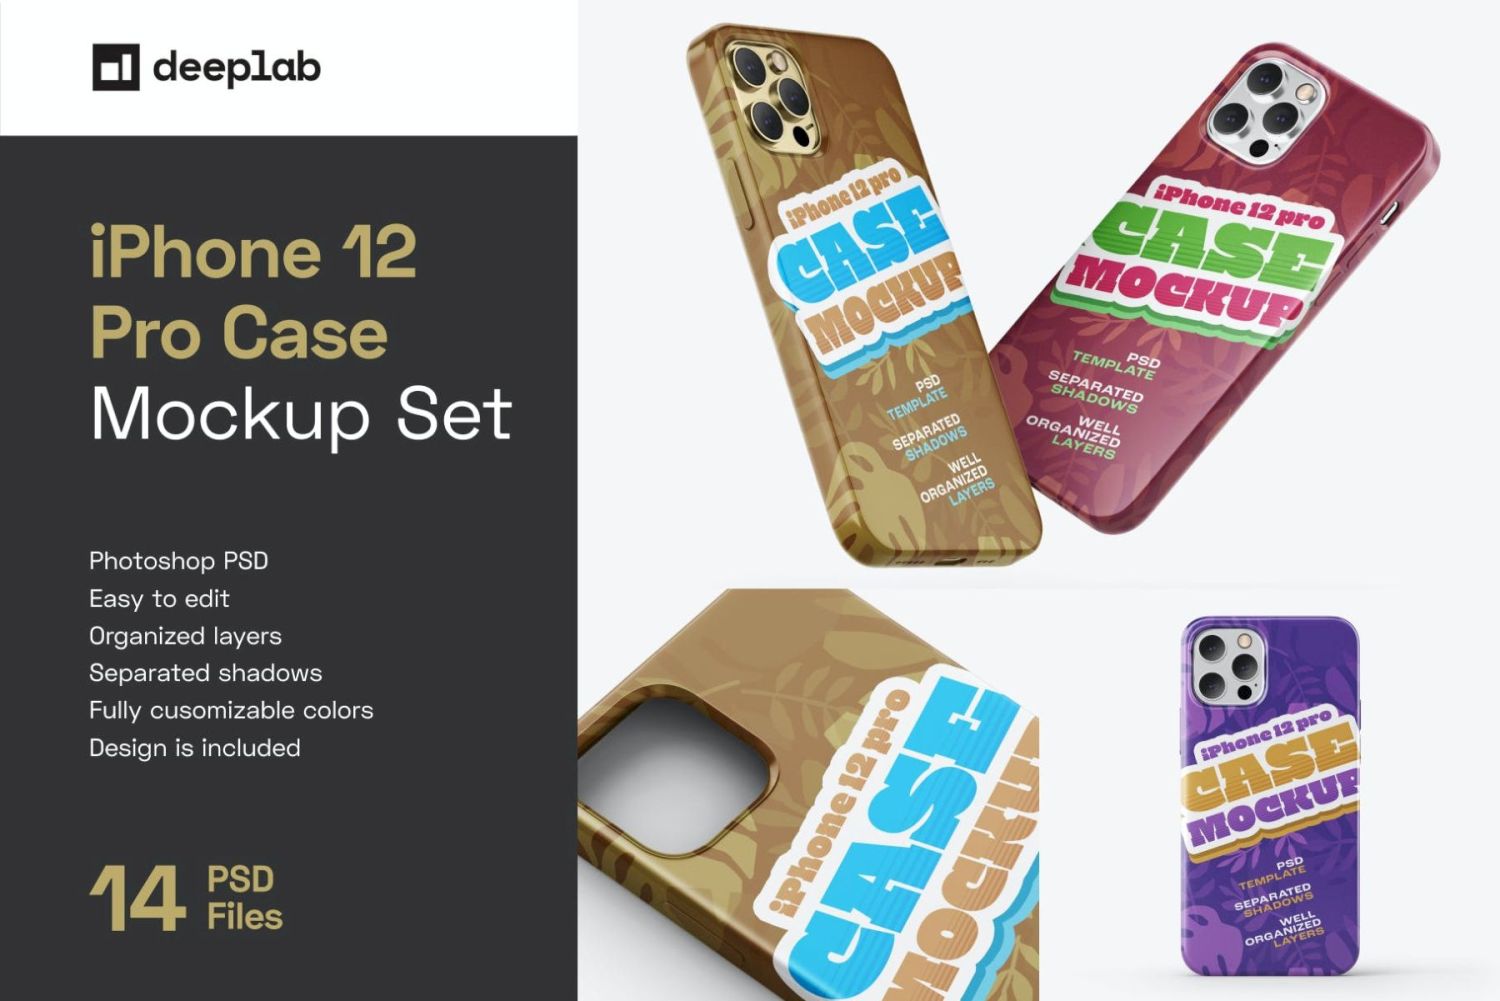 iPhone 12 Pro 手机壳样机套装 iPhone 12 Pro Case Mockup Set插图